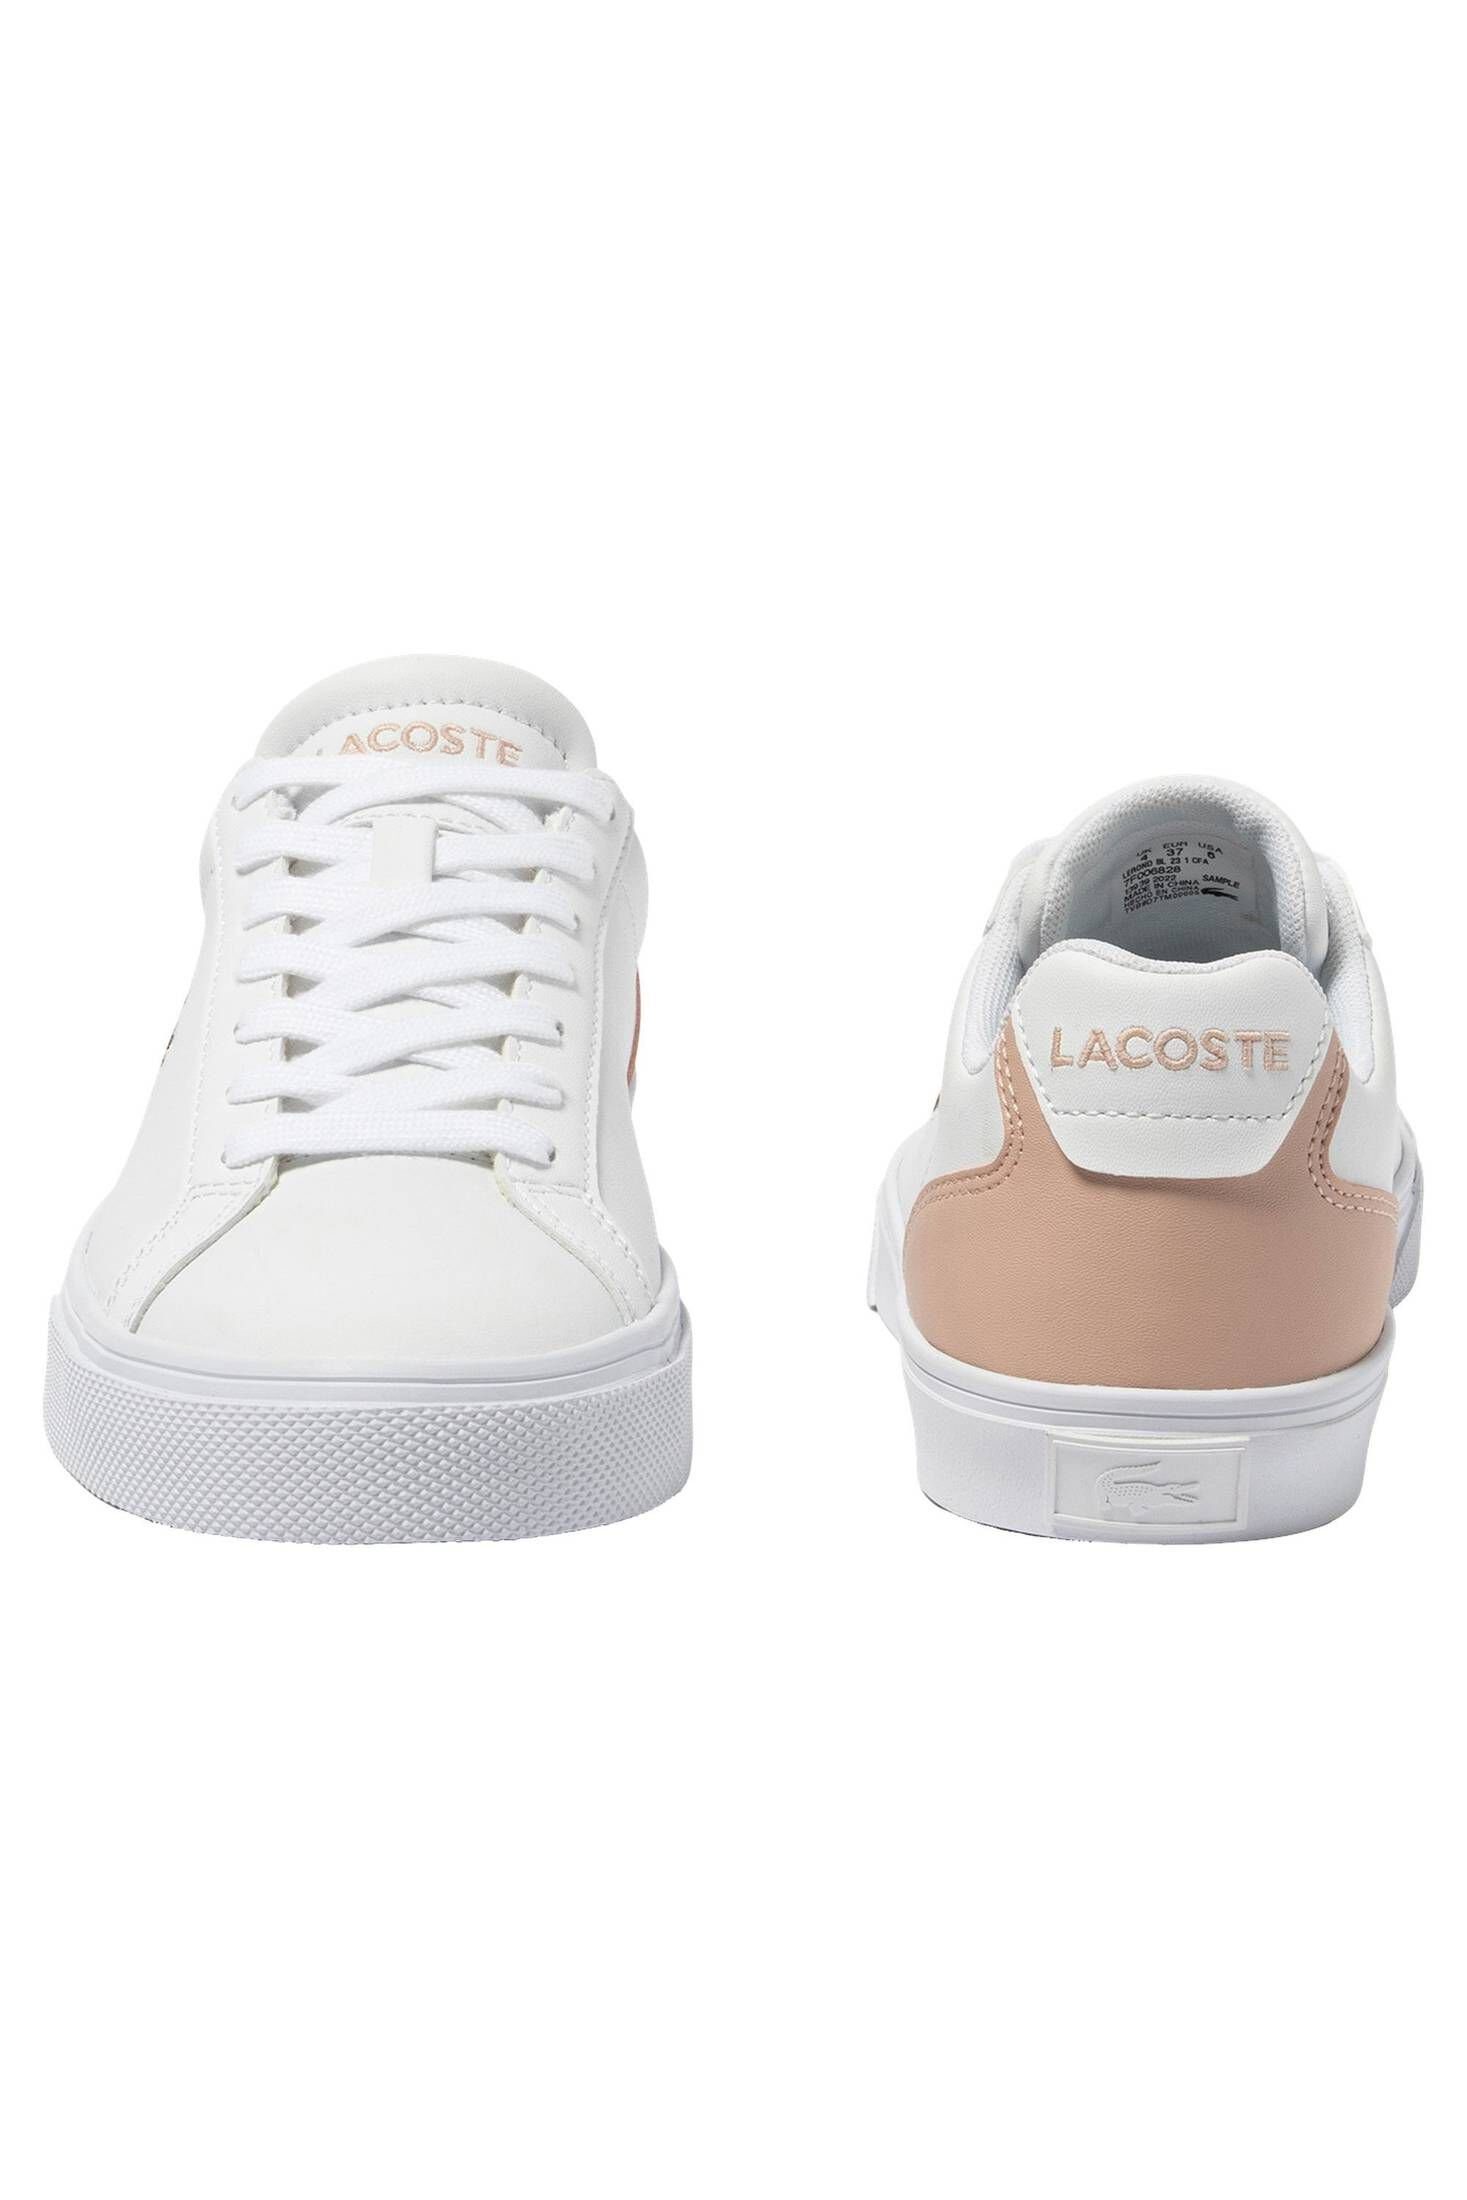 LEROND Sneaker Damen BASELINE weiss/rosa LEATHER Lacoste PRO Sneaker (982)